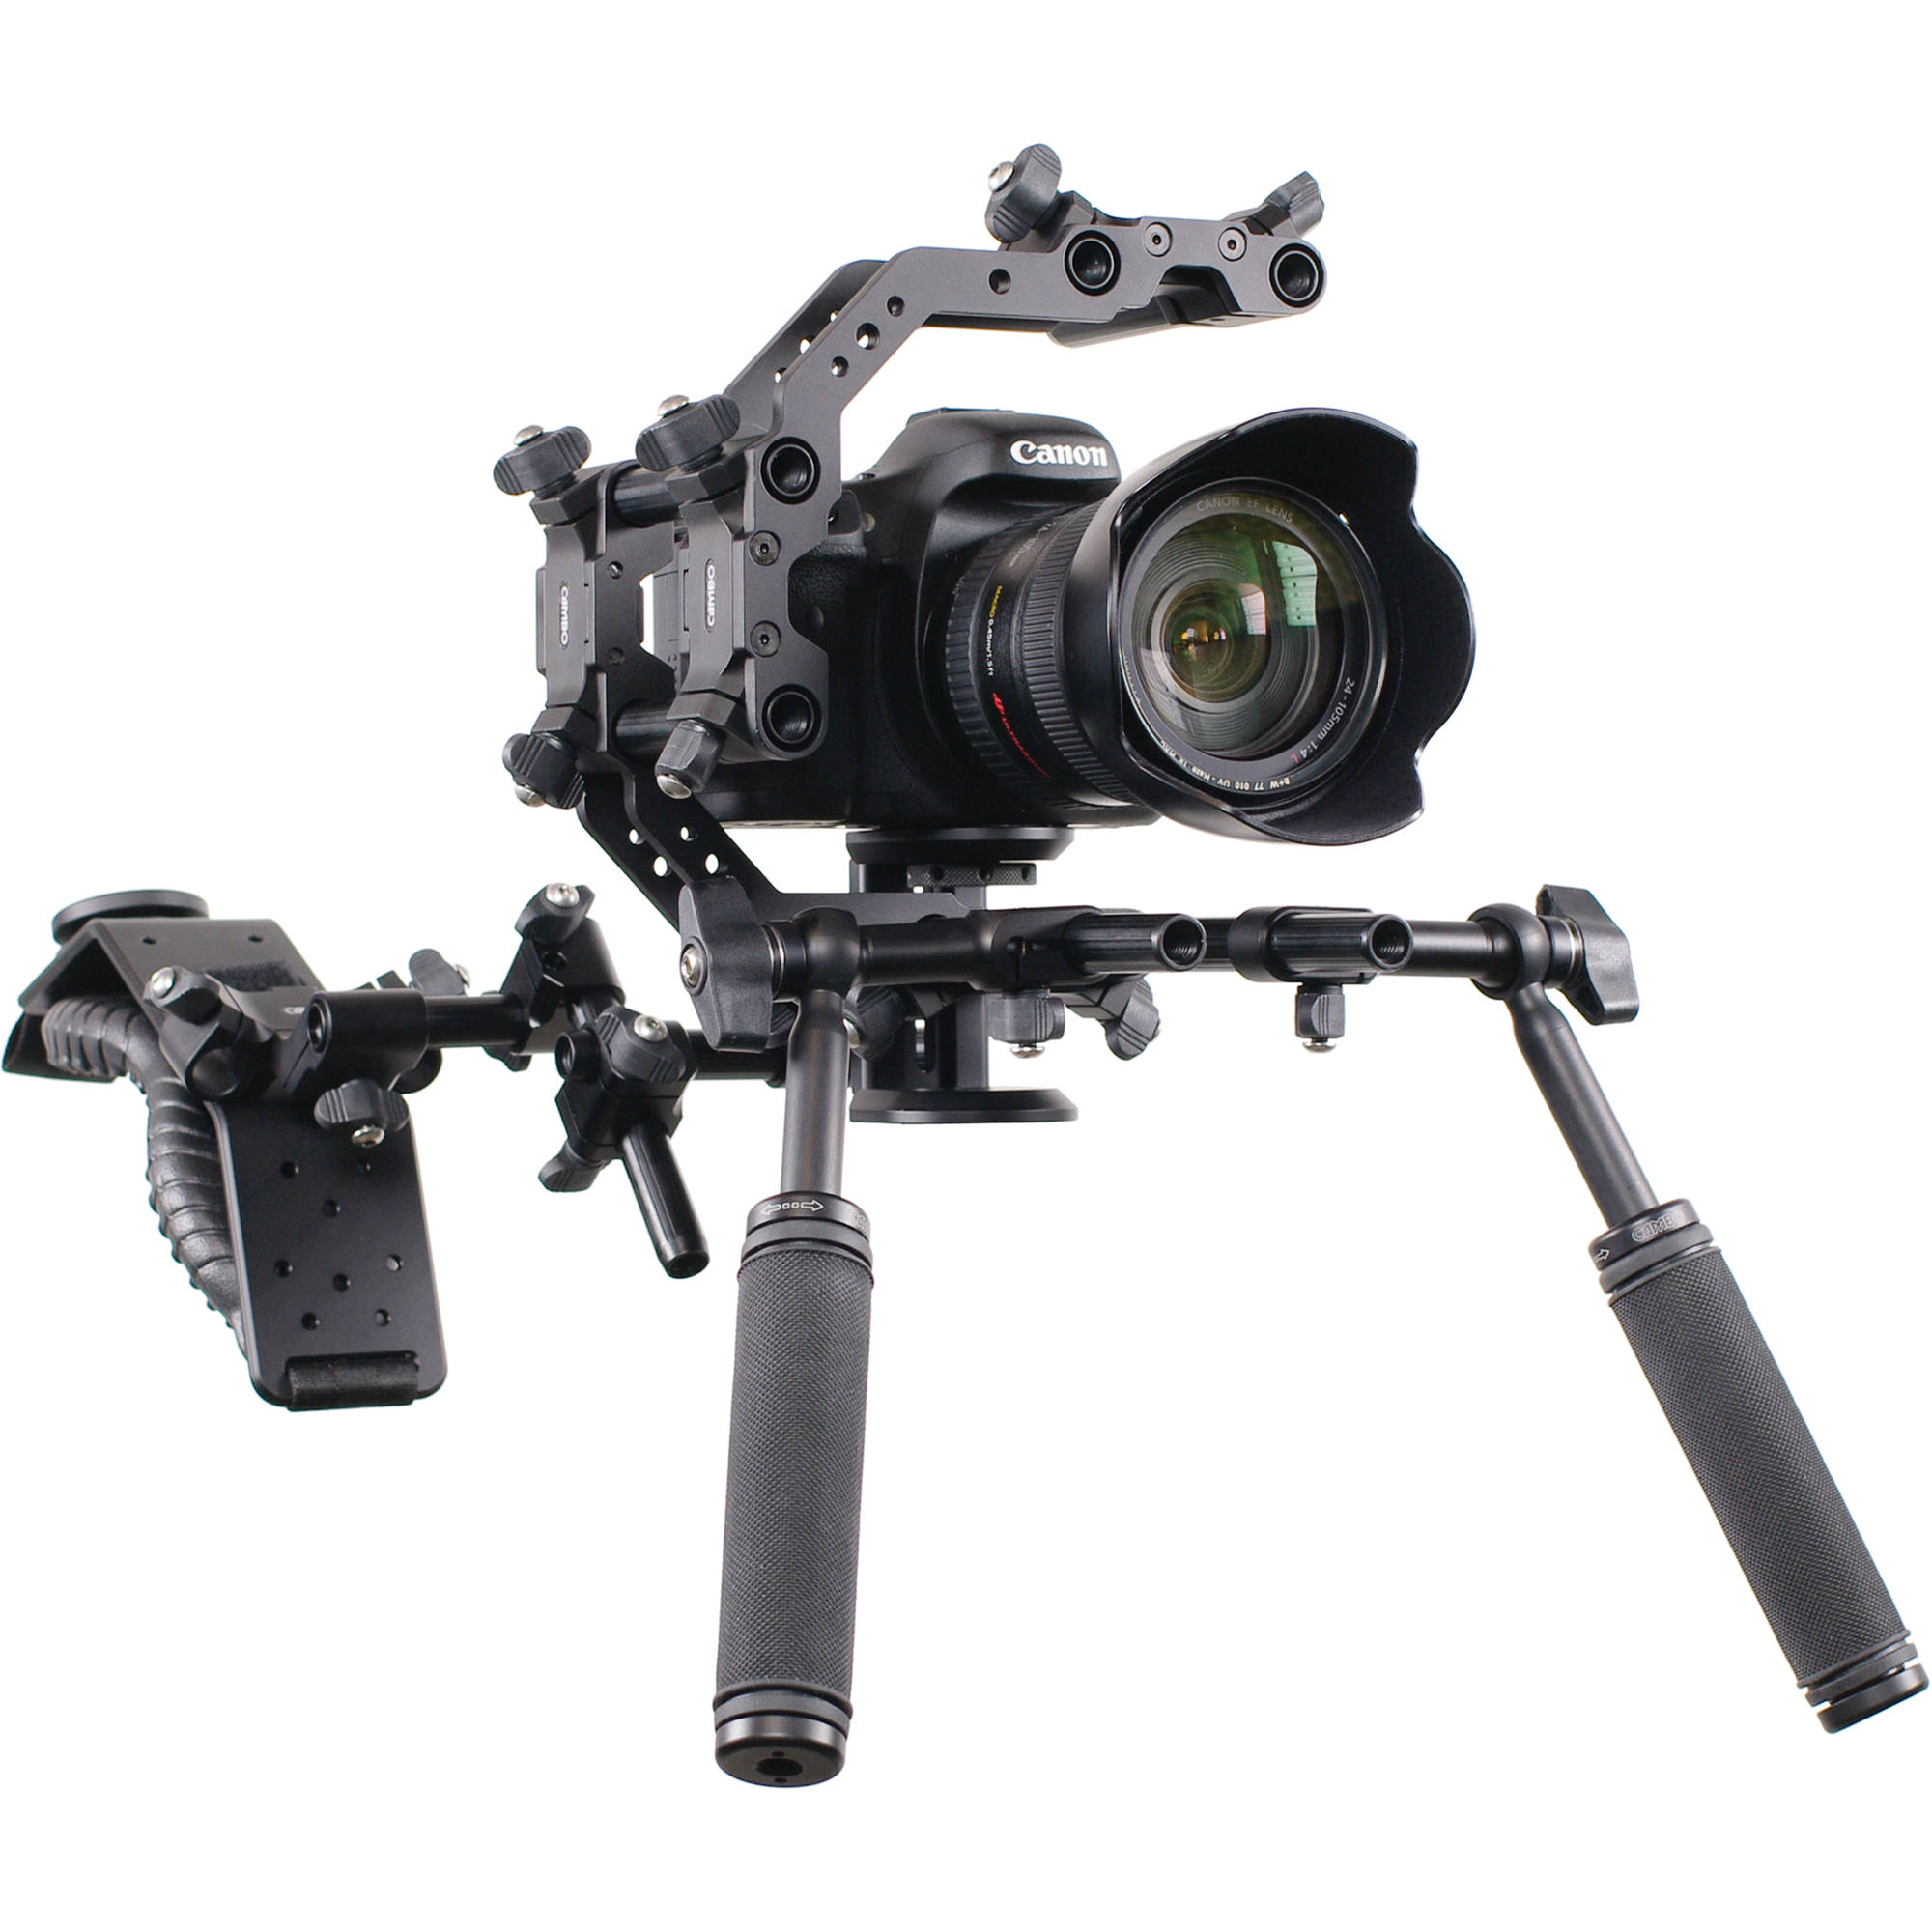 Веб камера рига. Камера CS-100. Риг для камеры. Универсальная риг для камеры. Видеооборудование.